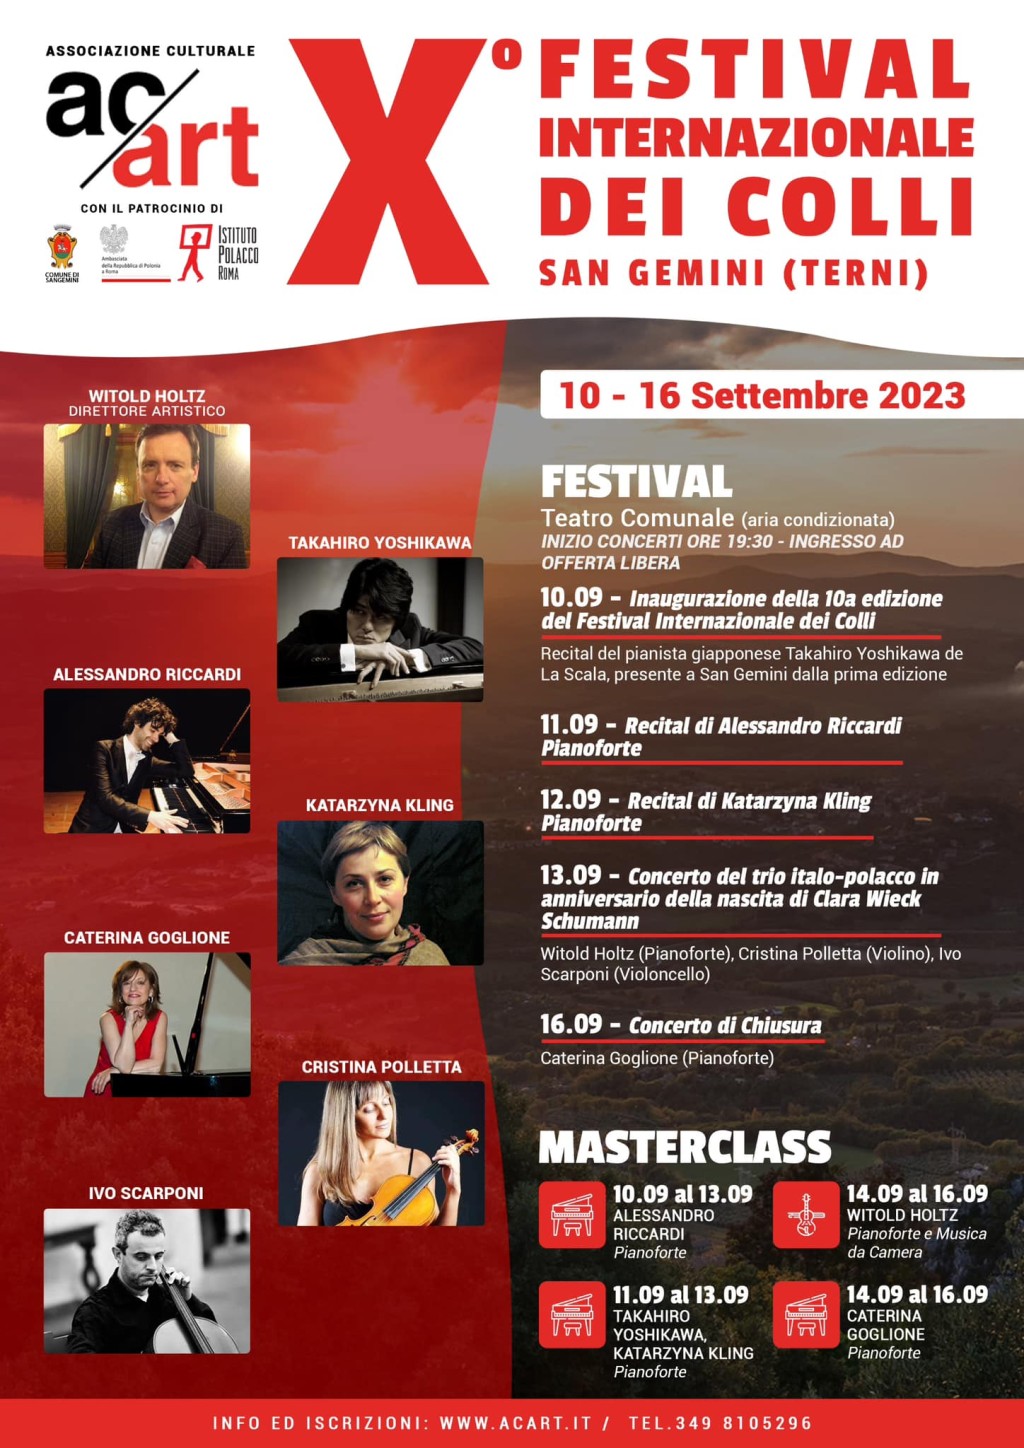 immagine X FESTIVAL INTERNAZIONALE DEI COLLI SAN GEMINI 10 - 16 Settembre 2023 Teatro comunale